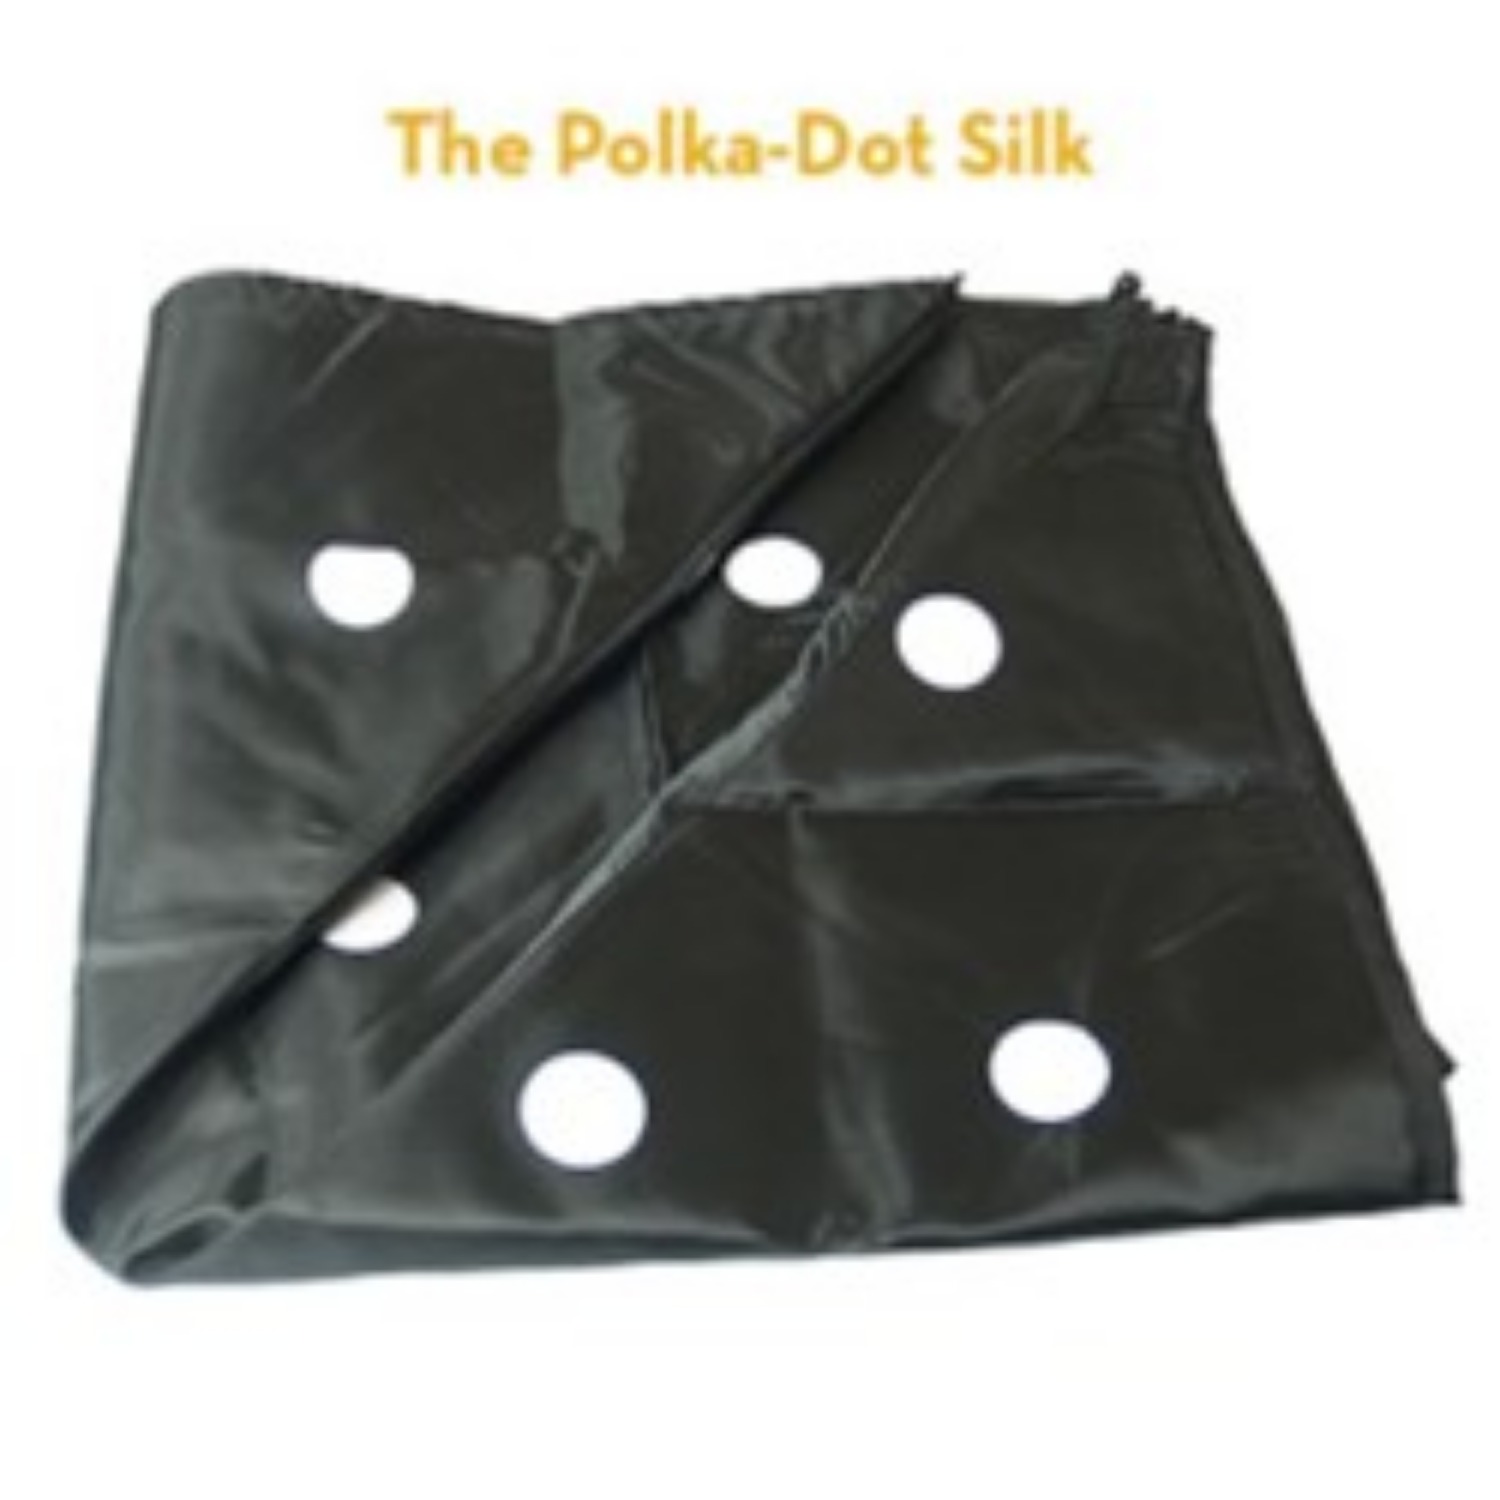 [폴카닷실크/18인치] The Polka Dot Silk 검정보자기에 흰색꽃가루를 뿌렸더니 놀랍게도 동그랗고 하얀 점으로 나타납니다.